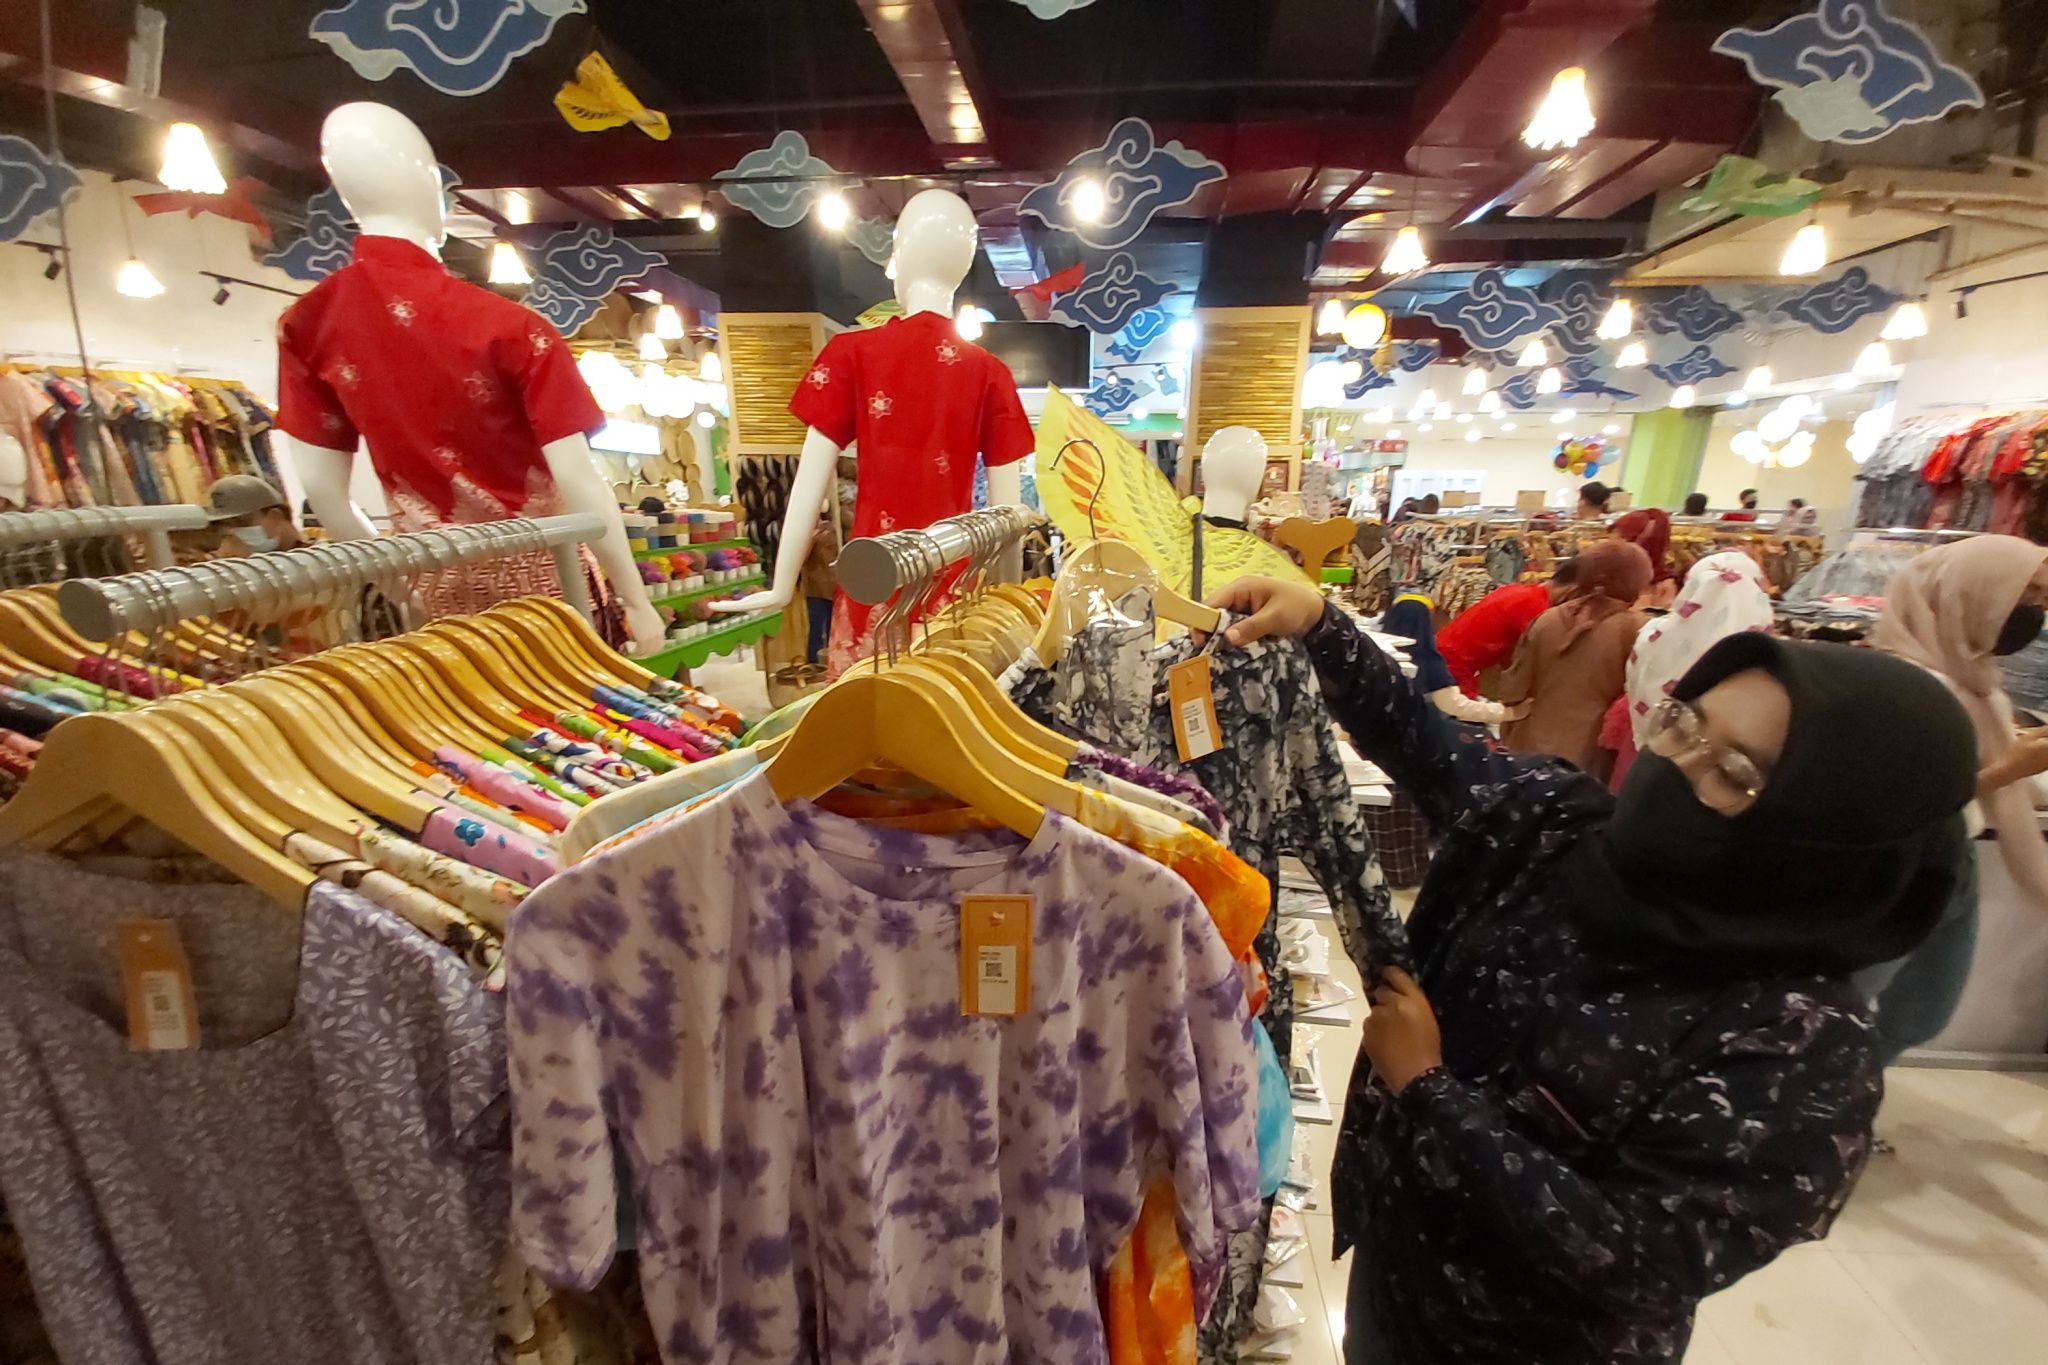 Pengunjung memilih pakaian batik di Lakon Heritage, Kota Bandung. Di tempat ini batik dijual dengan kualitas prima dan harga terjangkau.